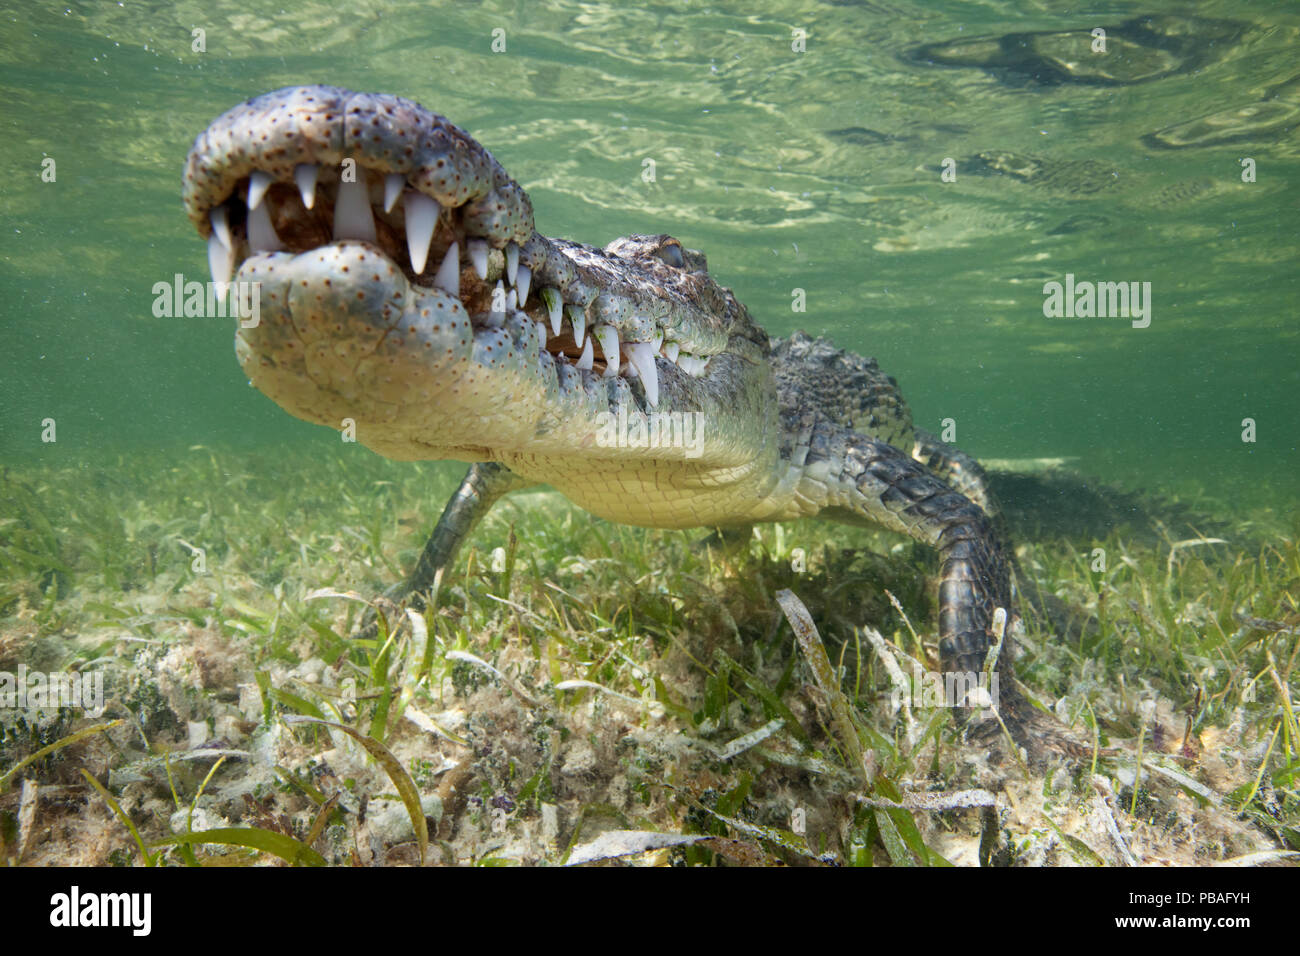 Coccodrillo americano (Crocodylus acutus) appoggiato appena al di sopra di piante fanerogame subacquea, Banco Chinchorro Riserva della Biosfera, regione dei Caraibi, Messico Foto Stock